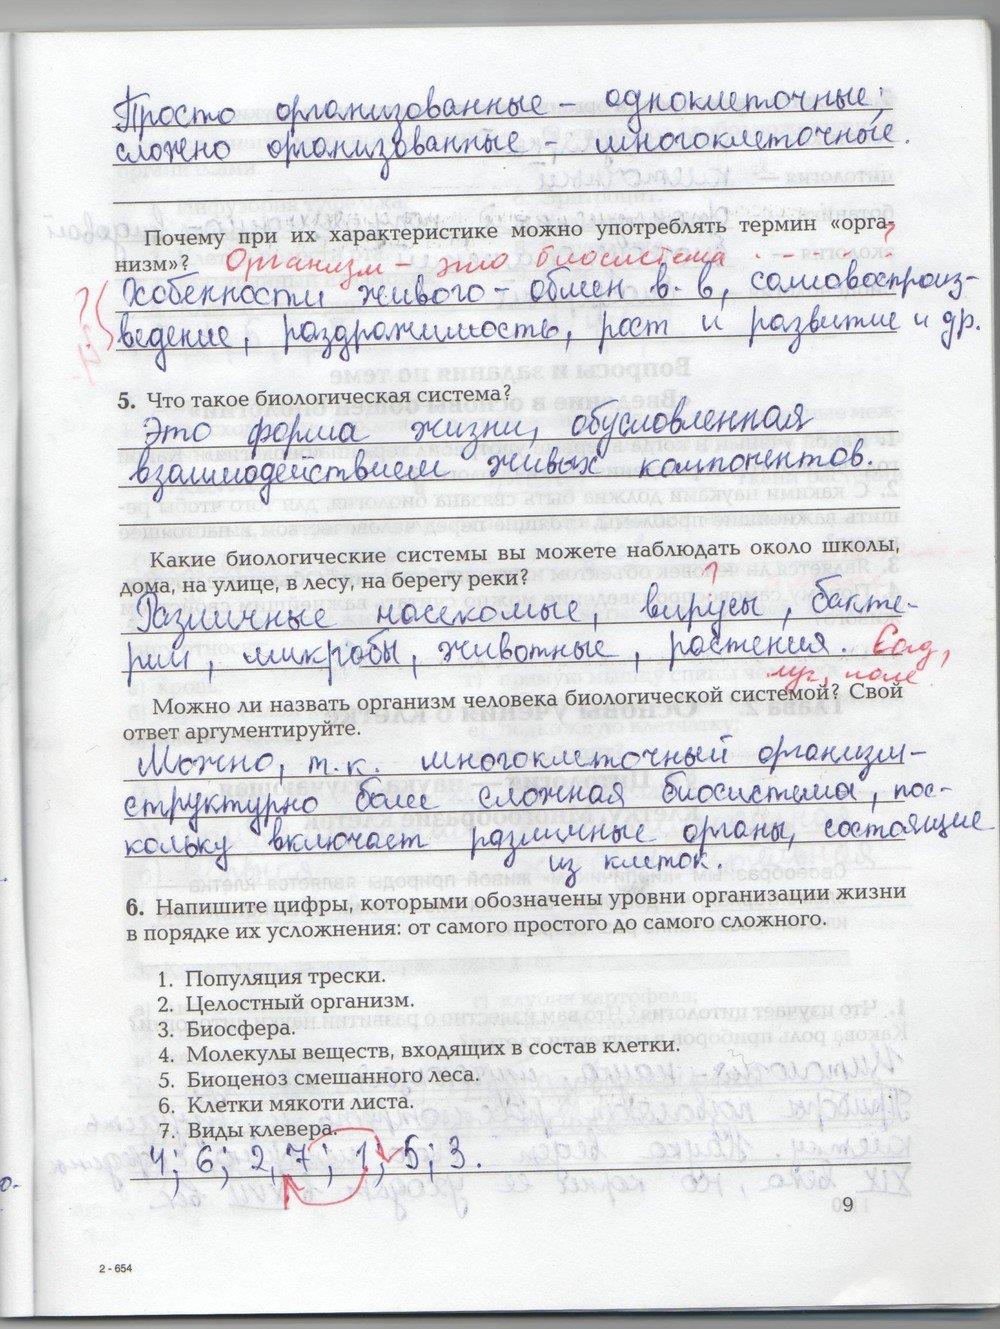 гдз 9 класс рабочая тетрадь страница 9 биология Козлова, Кучменко